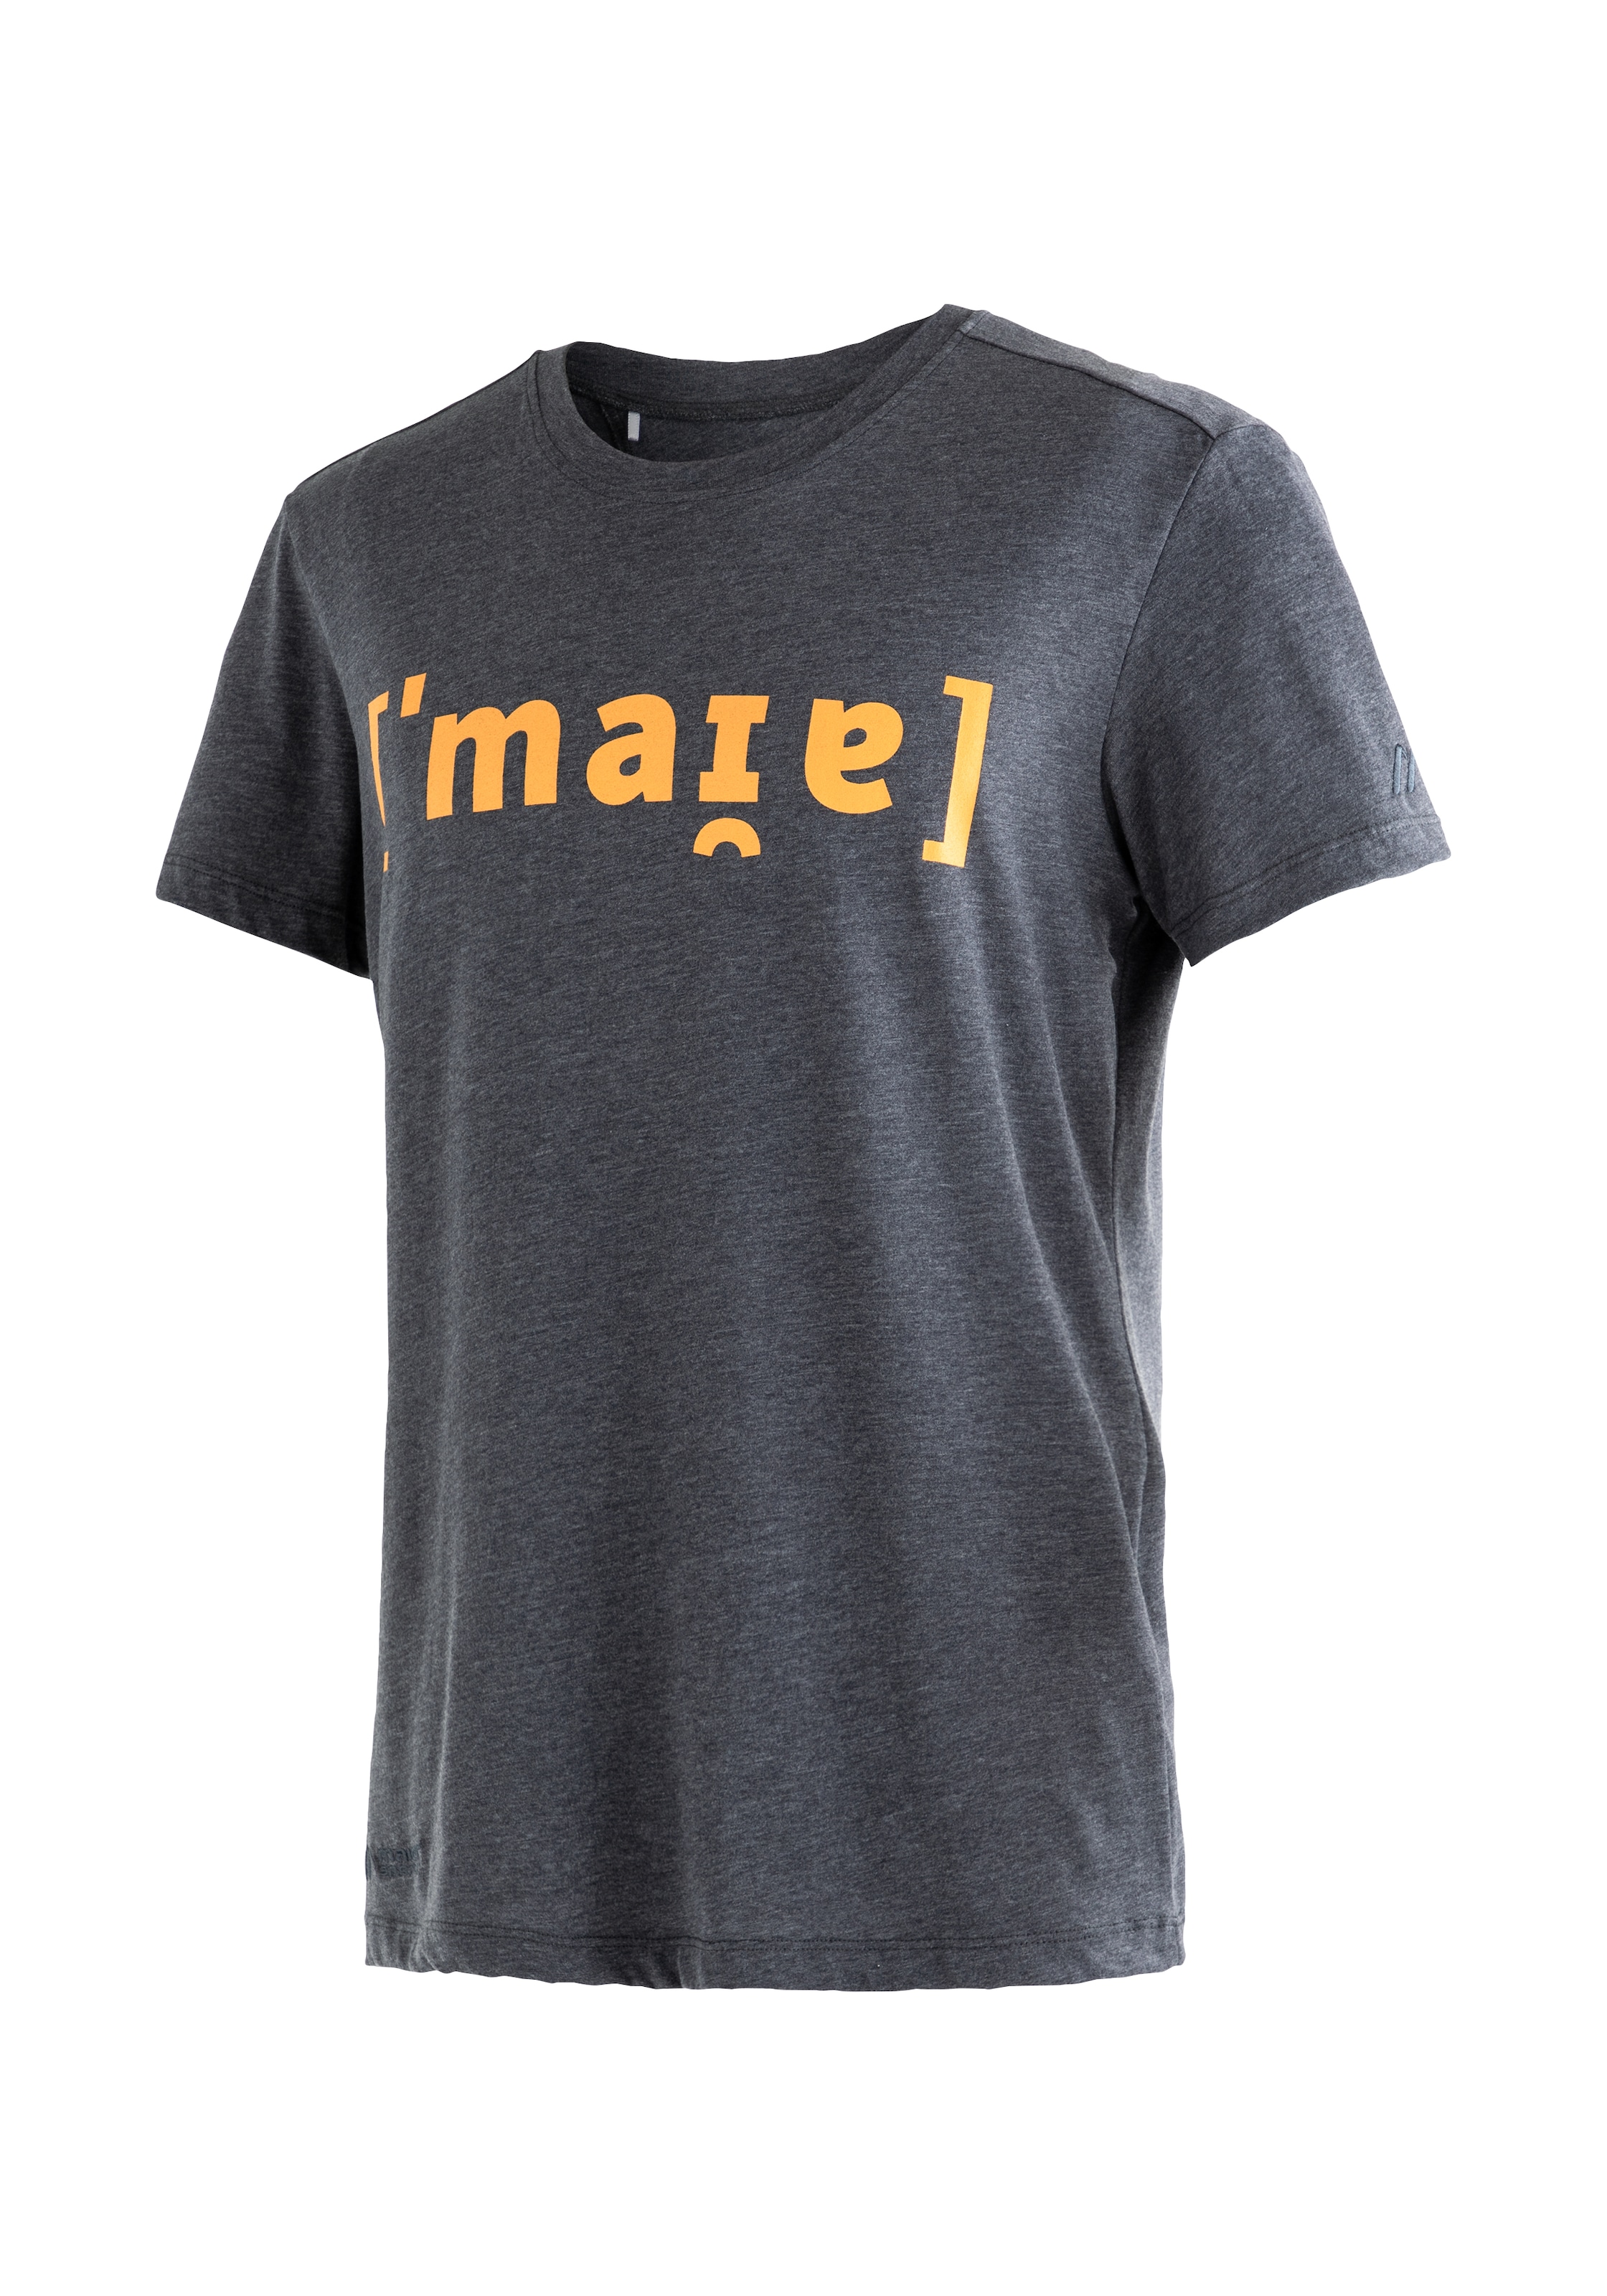 Flg T-Shirt - günstige Mode online shoppen